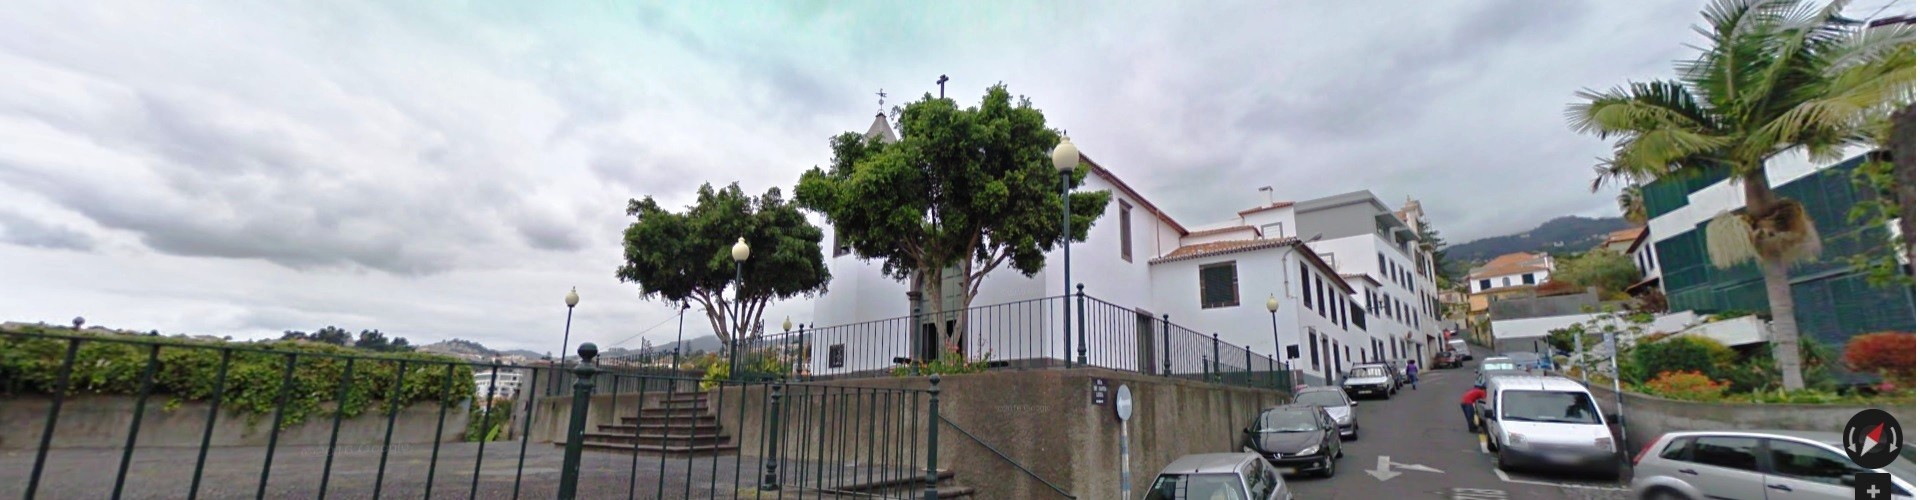 Santa Luzia Church, Funchal, Madeira